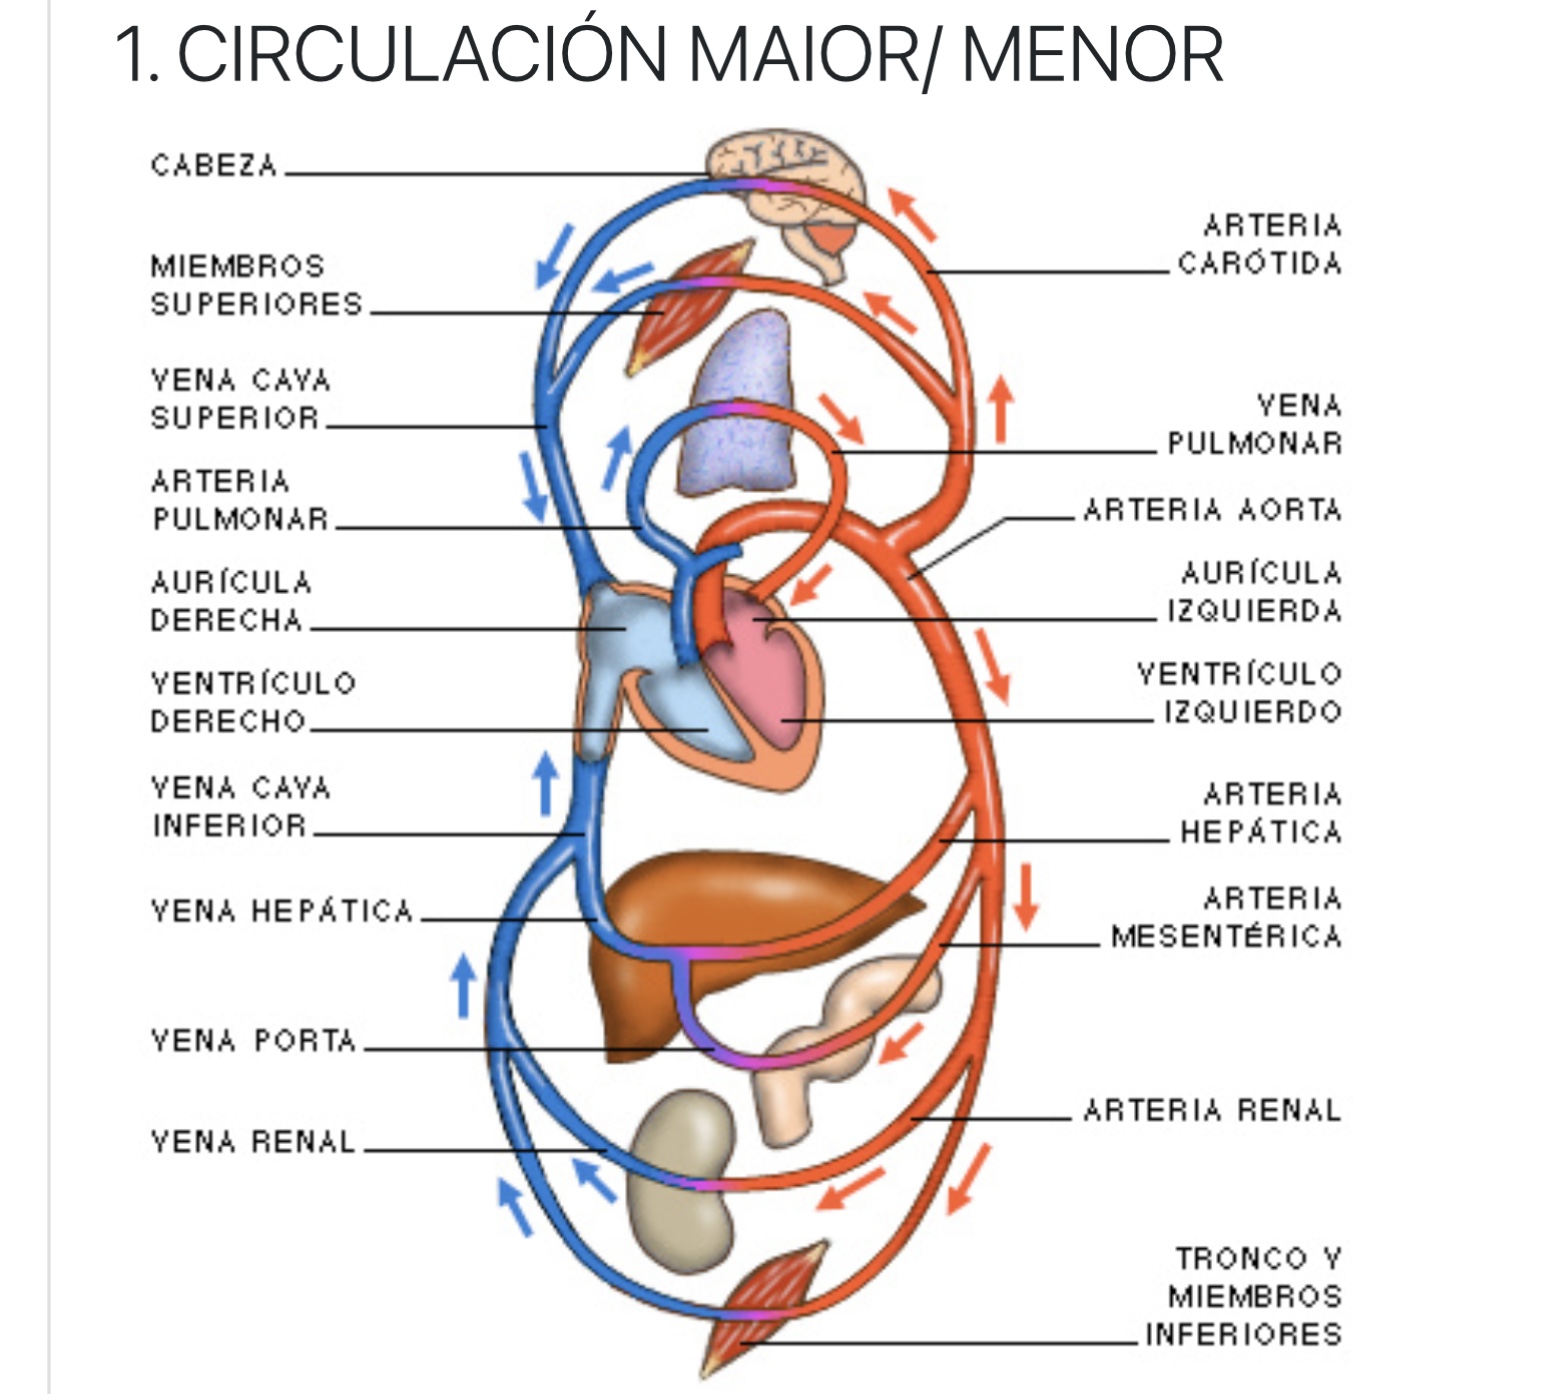 CIRCULACIÓN MAIOR/ MENOR